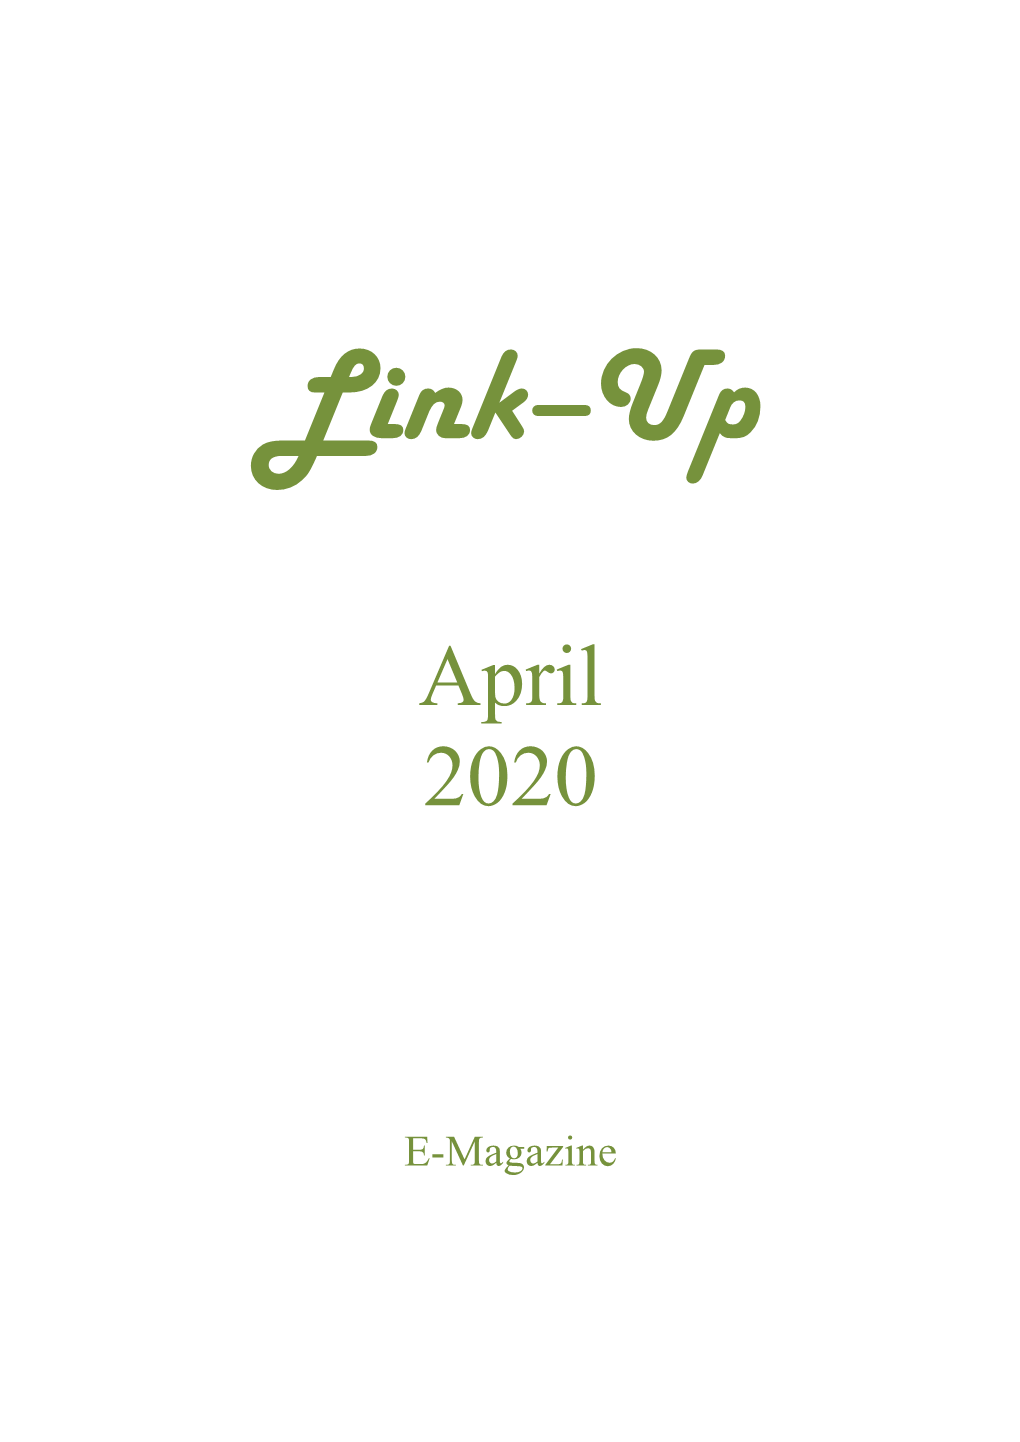 Link-Up April 2020